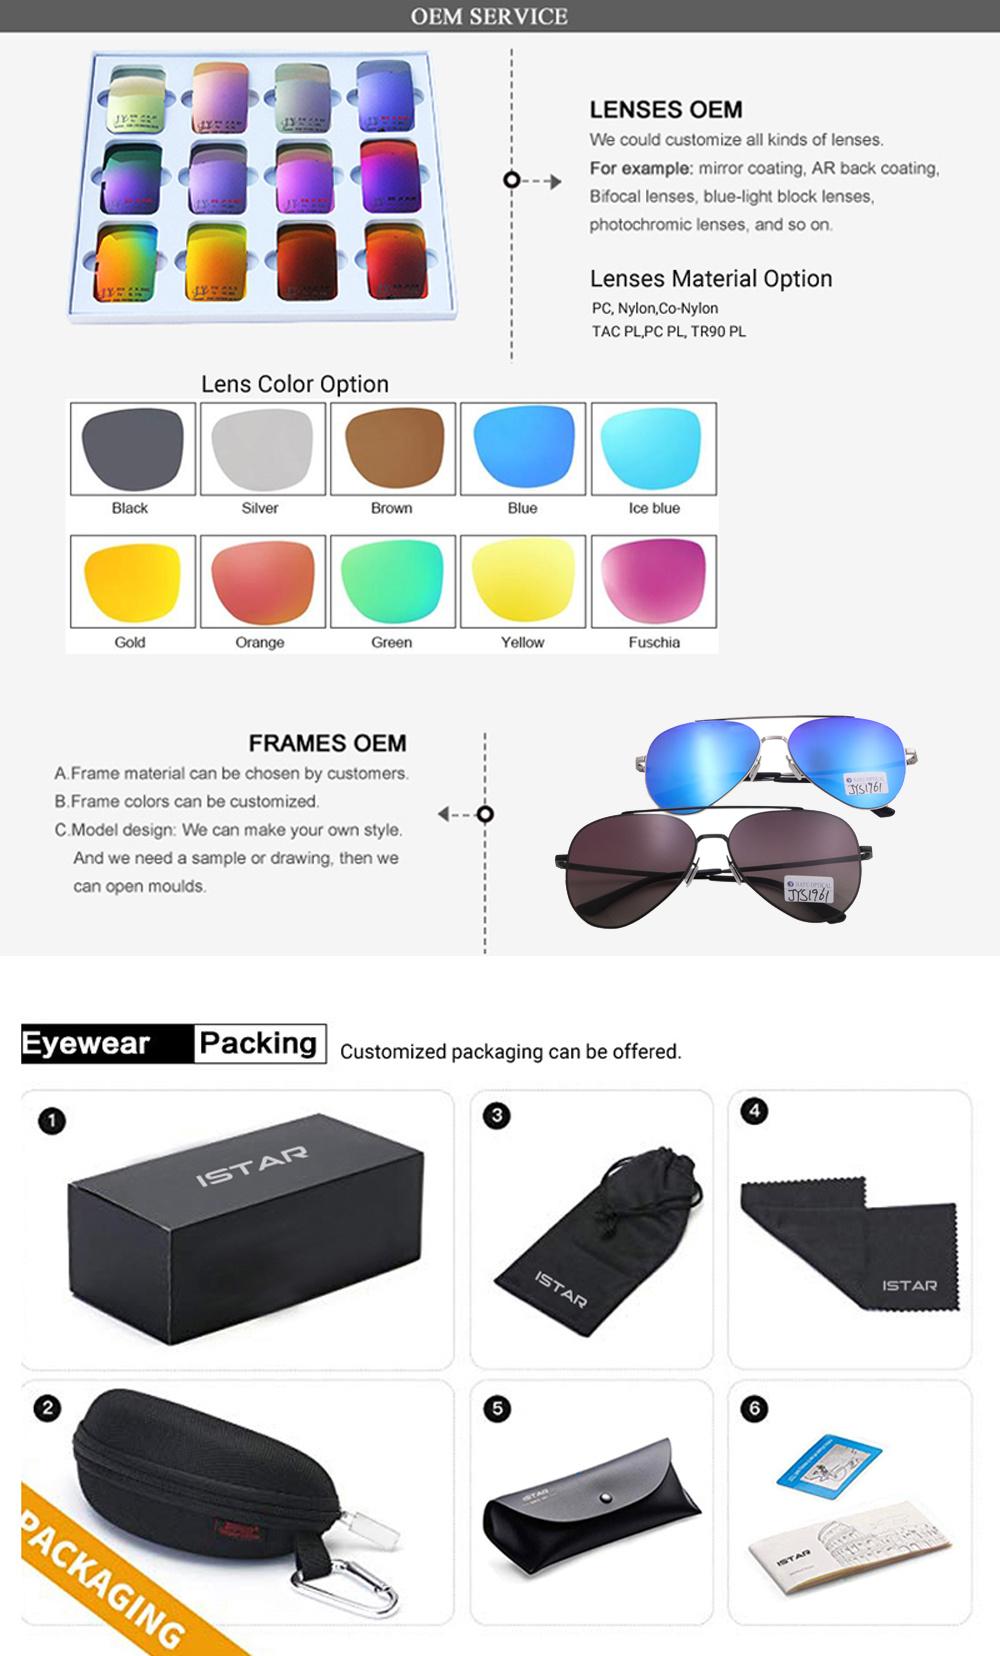 Custom Popular Metal UV400 Protection Aluminium Alloy Unisex Pilot Sunglasses